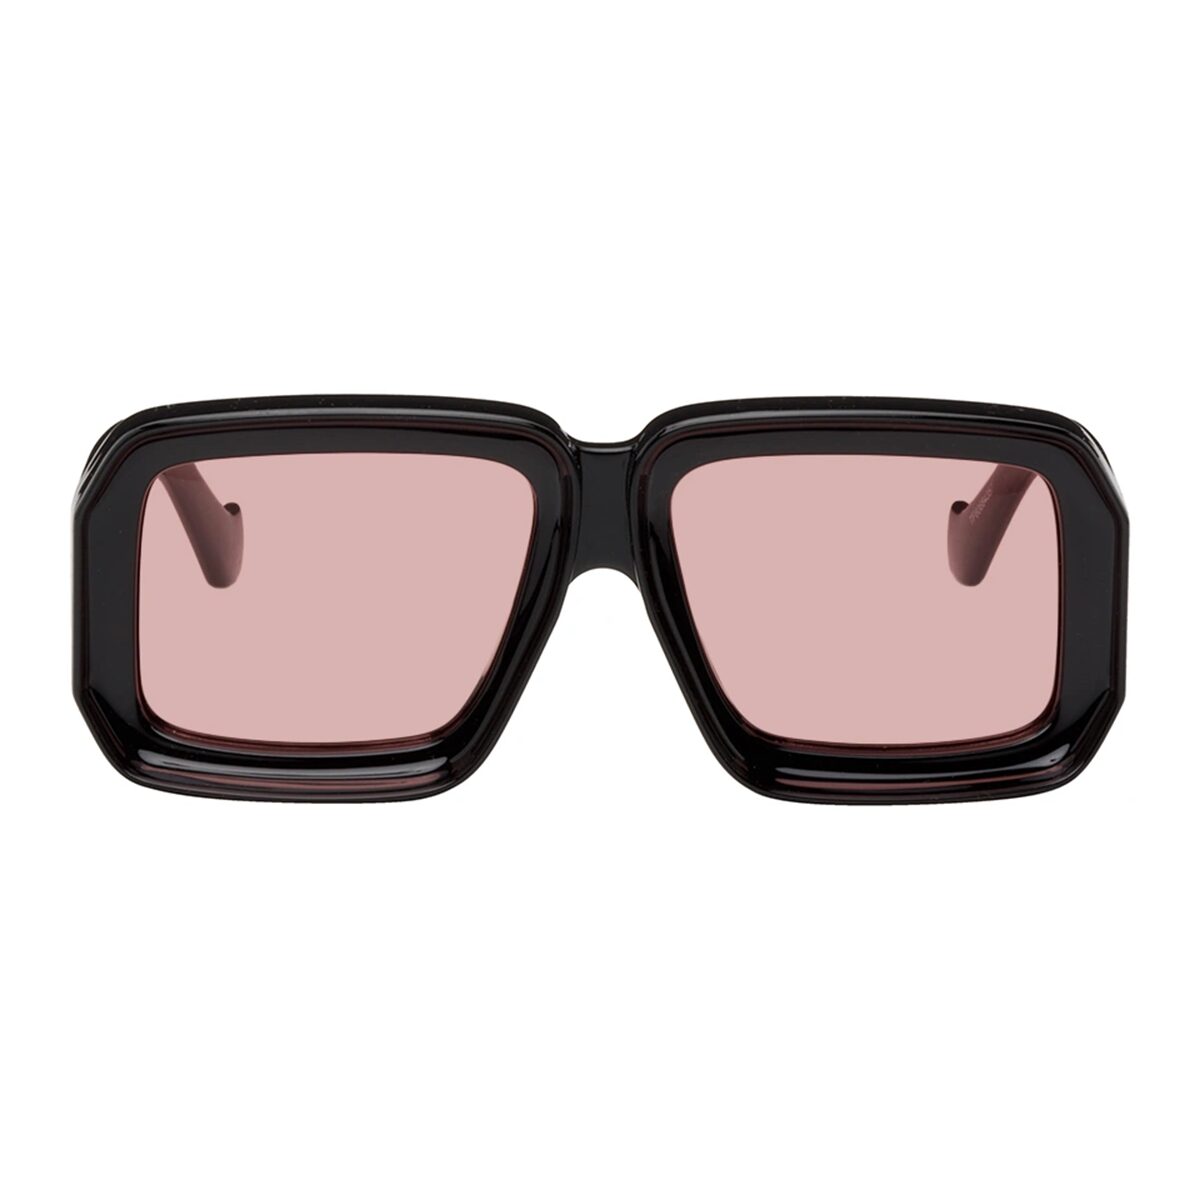 Luxuriöse Oversized-Sonnenbrille, Supreme Noir der Luxusbrillenmarke AKA SAVRAN, ähnlich der Loewe Paula's Ibiza Dive in Mask Sunglasses